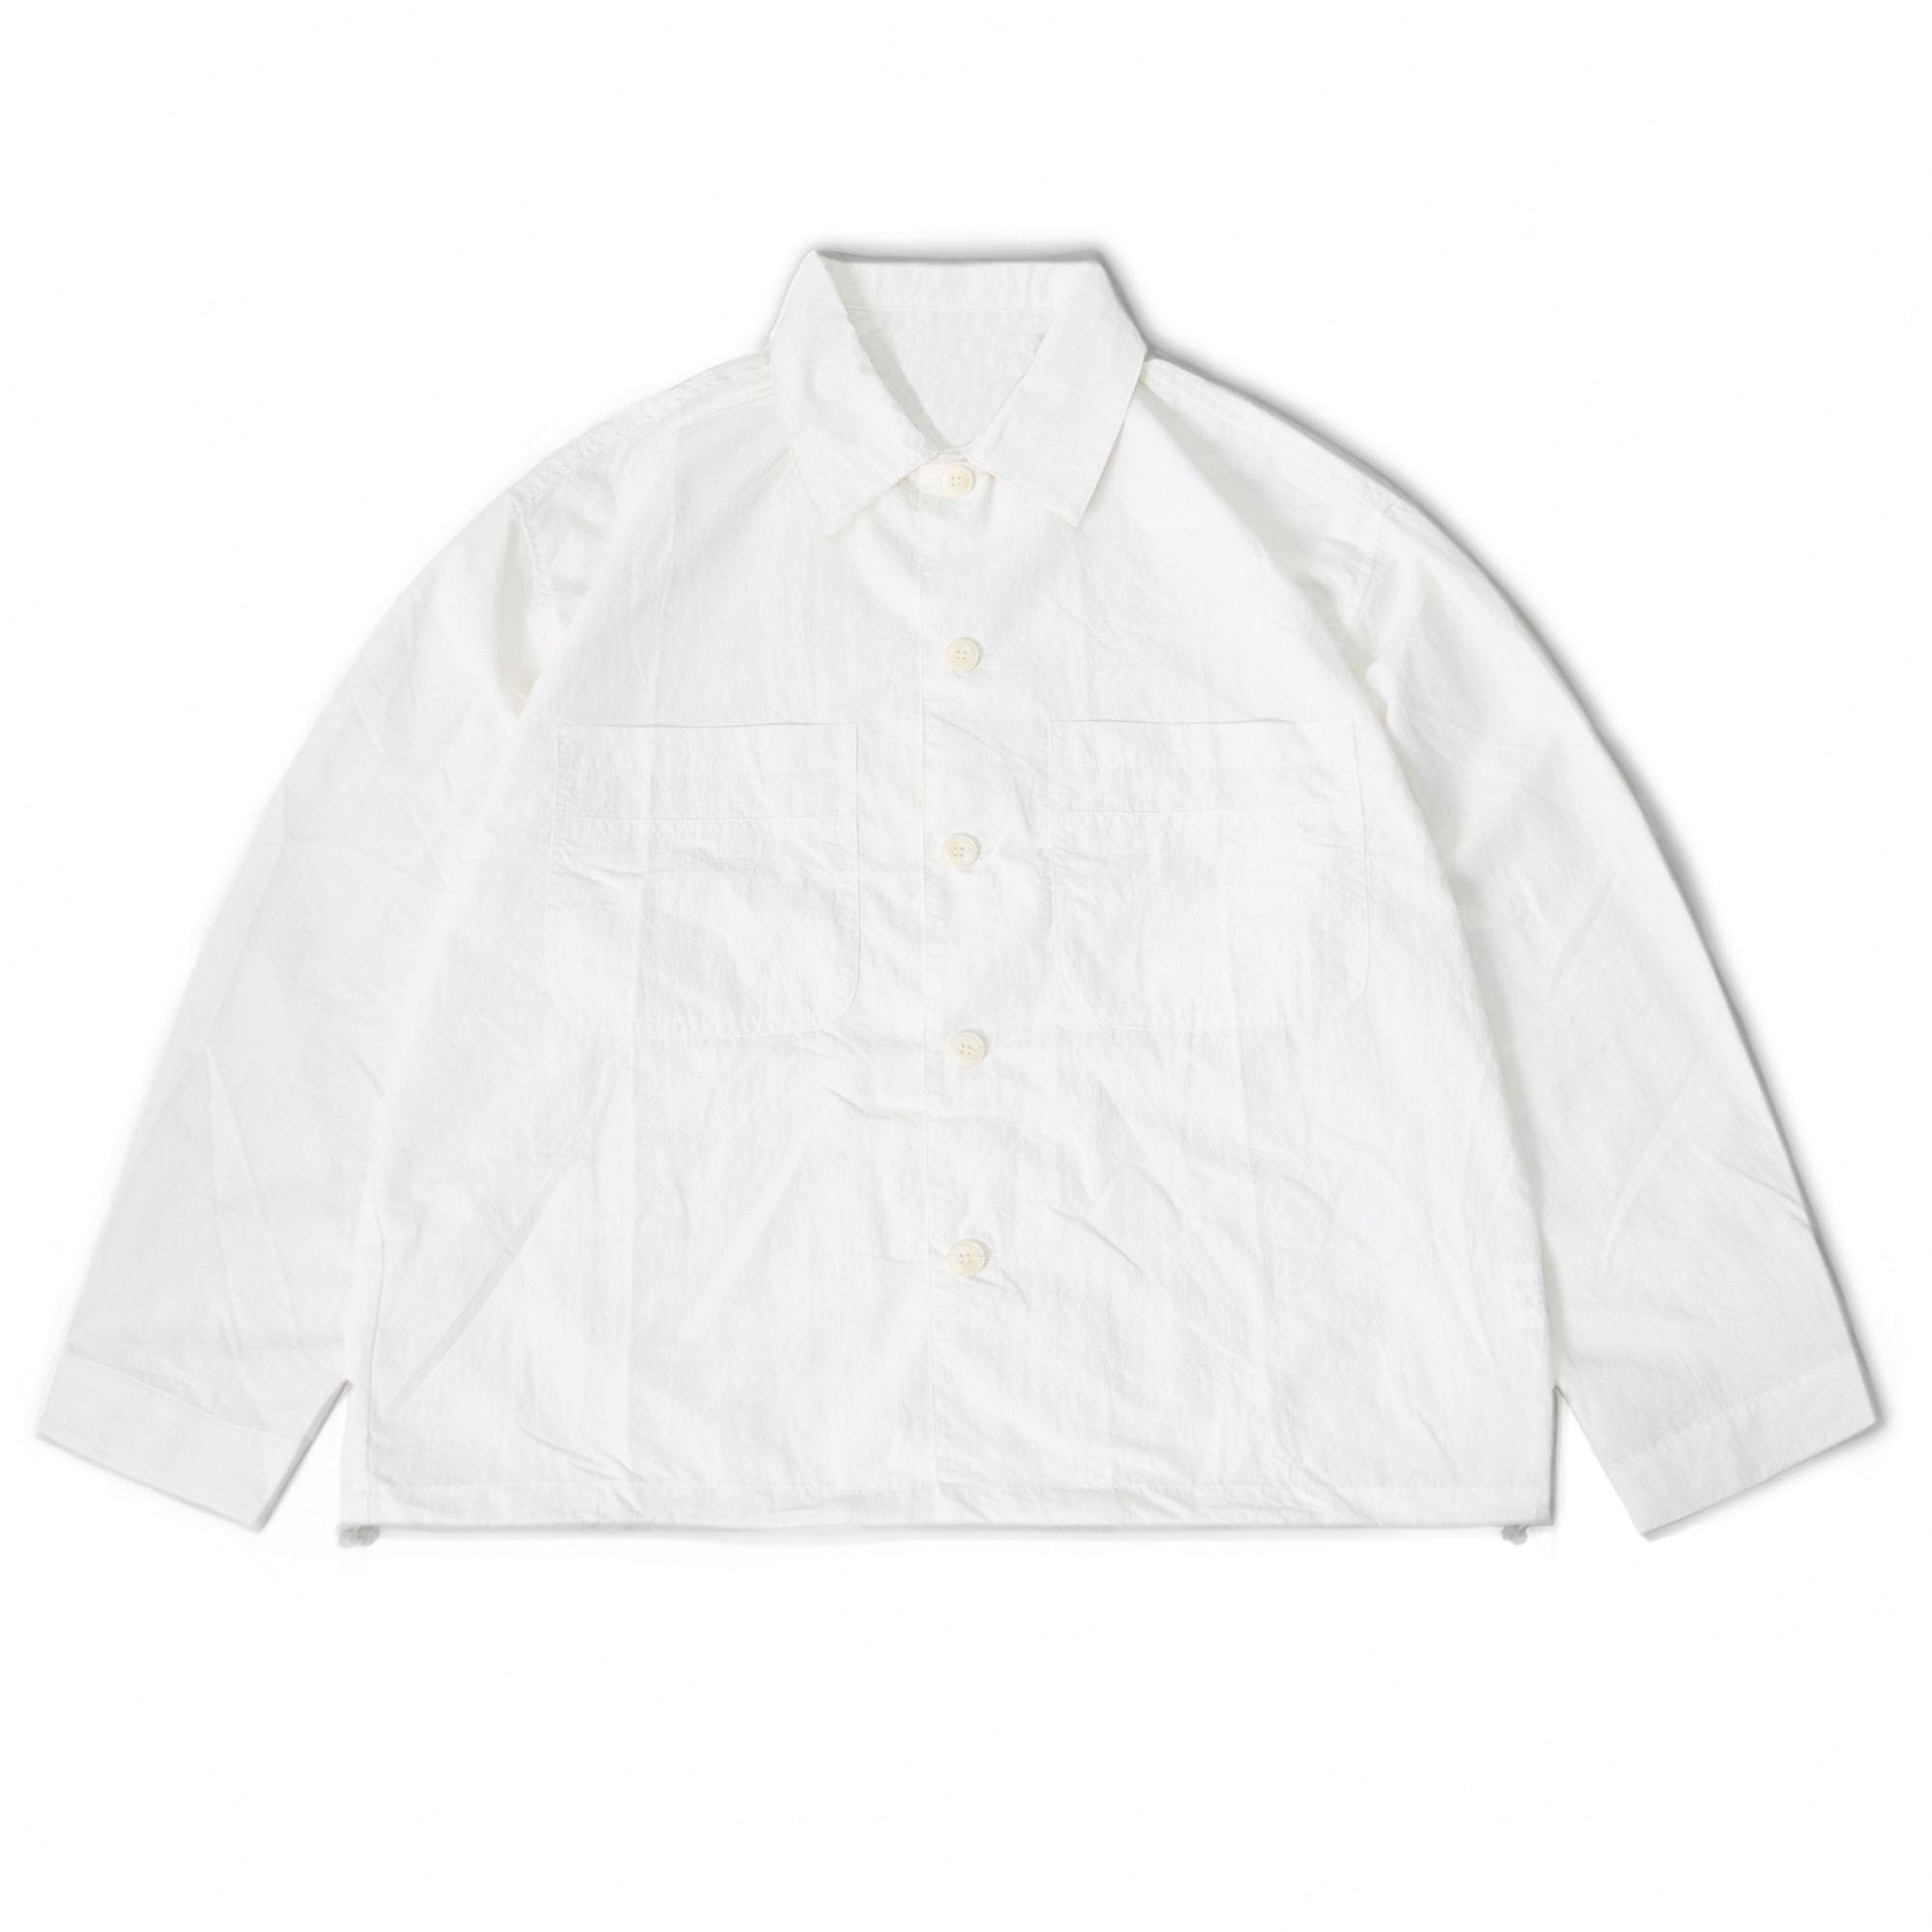 Nylon String Shirt Jacket - White